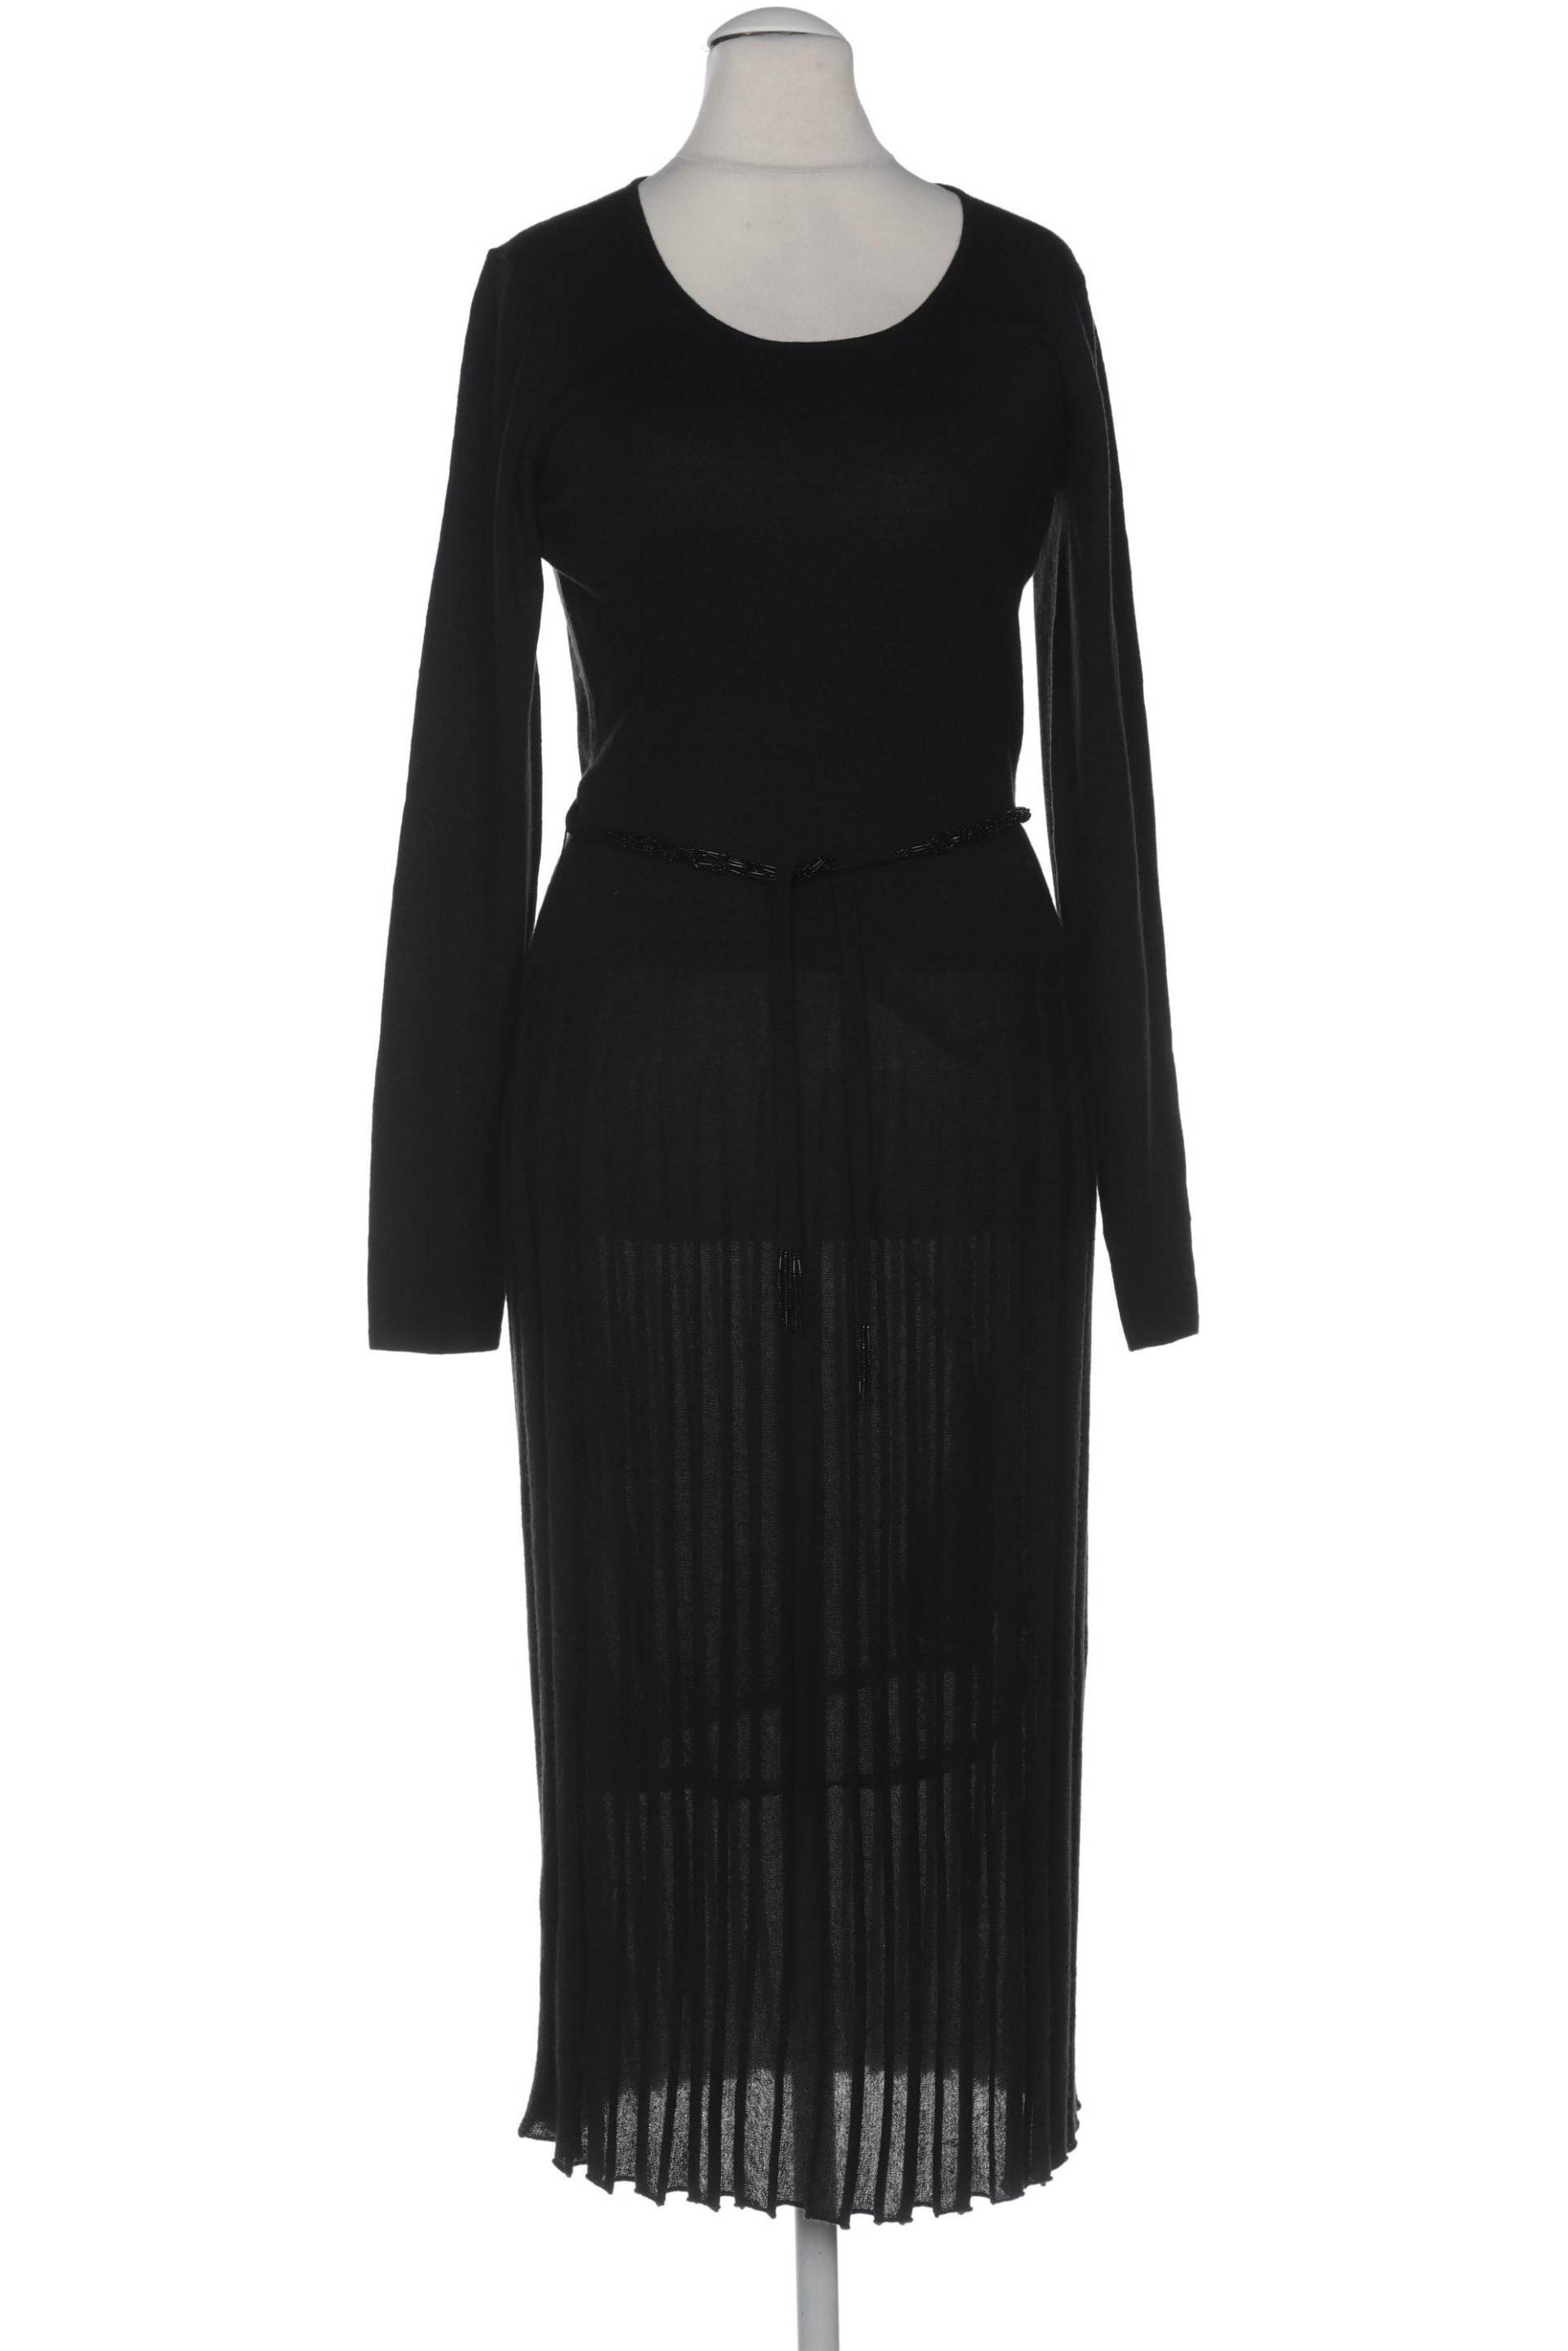 Apriori Damen Kleid, schwarz, Gr. 38 von Apriori